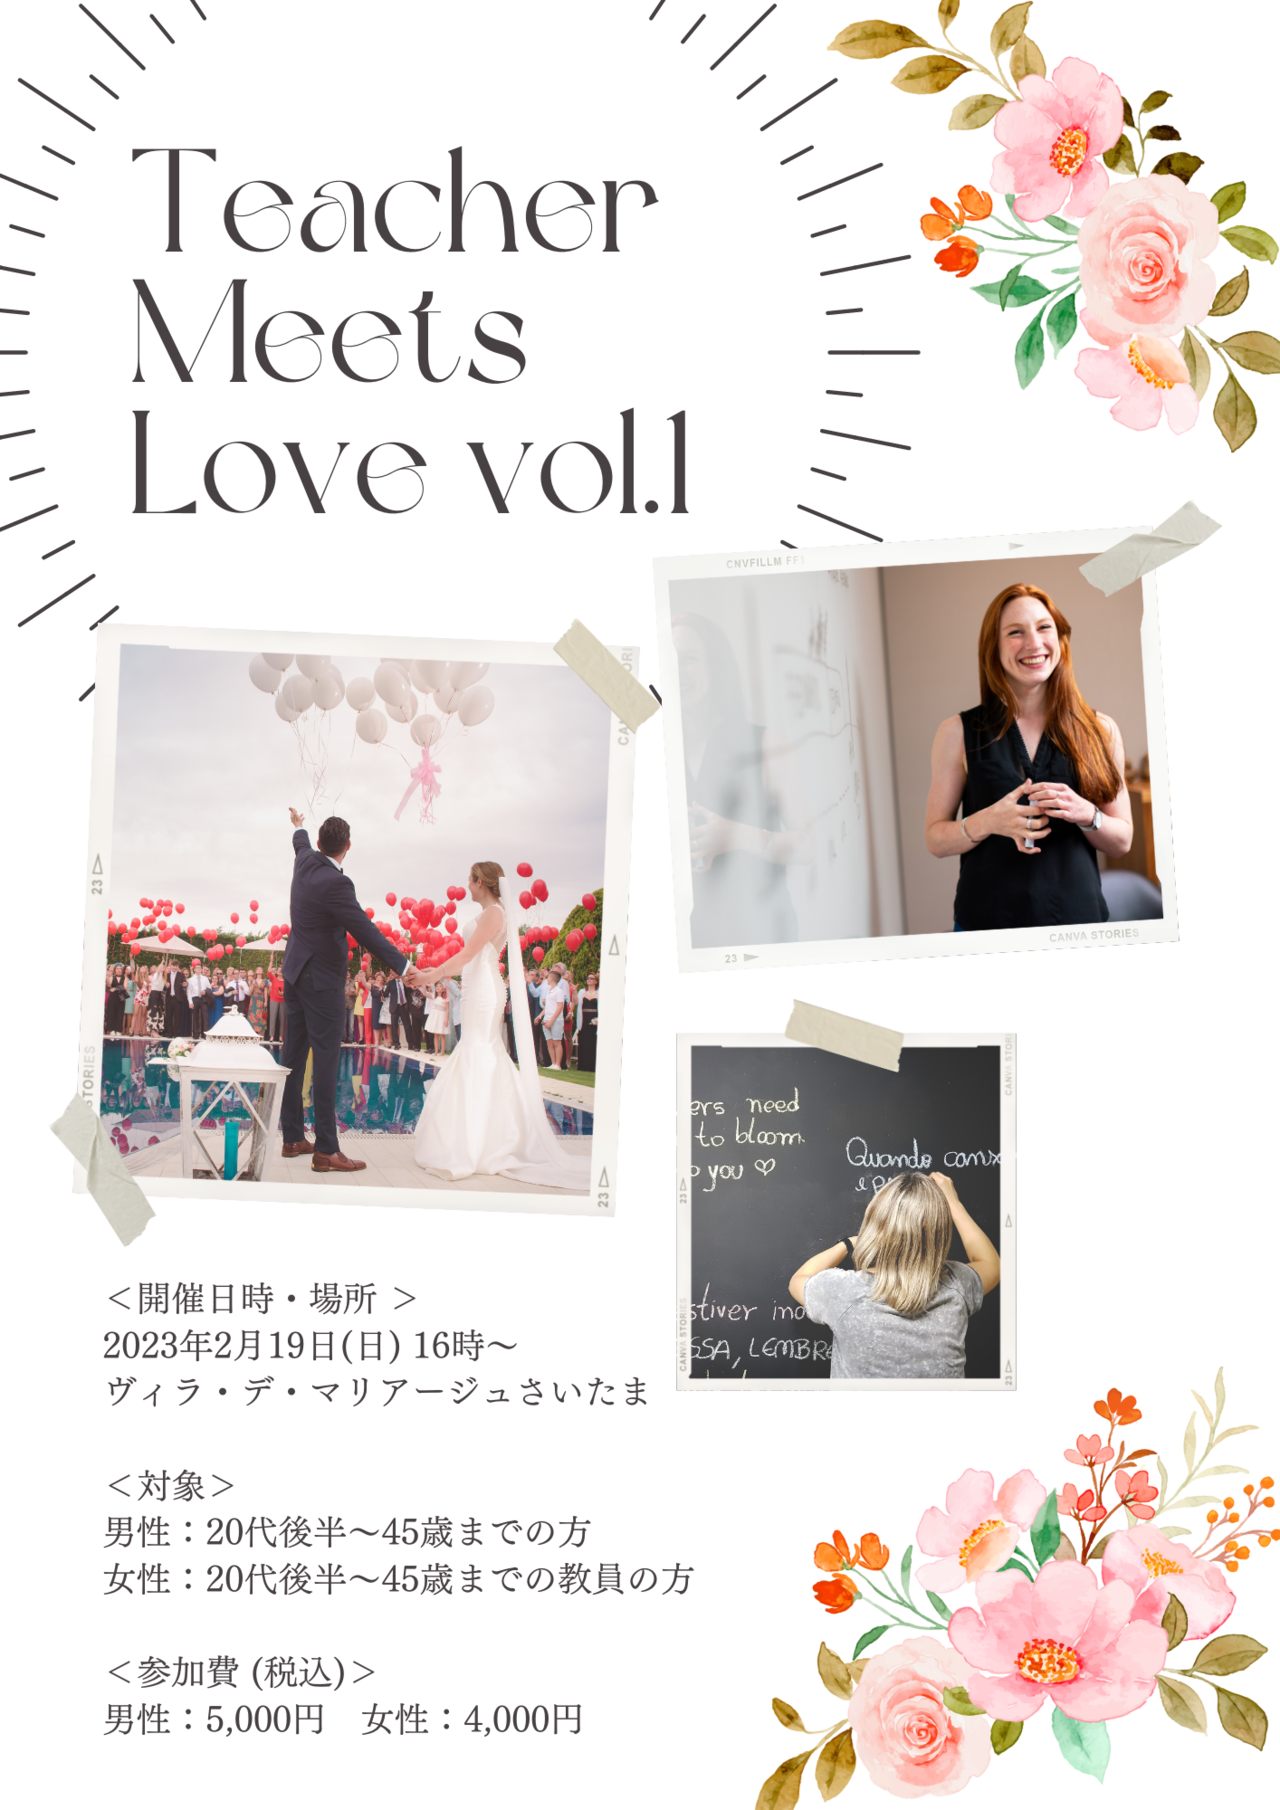 女性教員が集まる婚活イベント 【Teacher Meets Love vol.1】